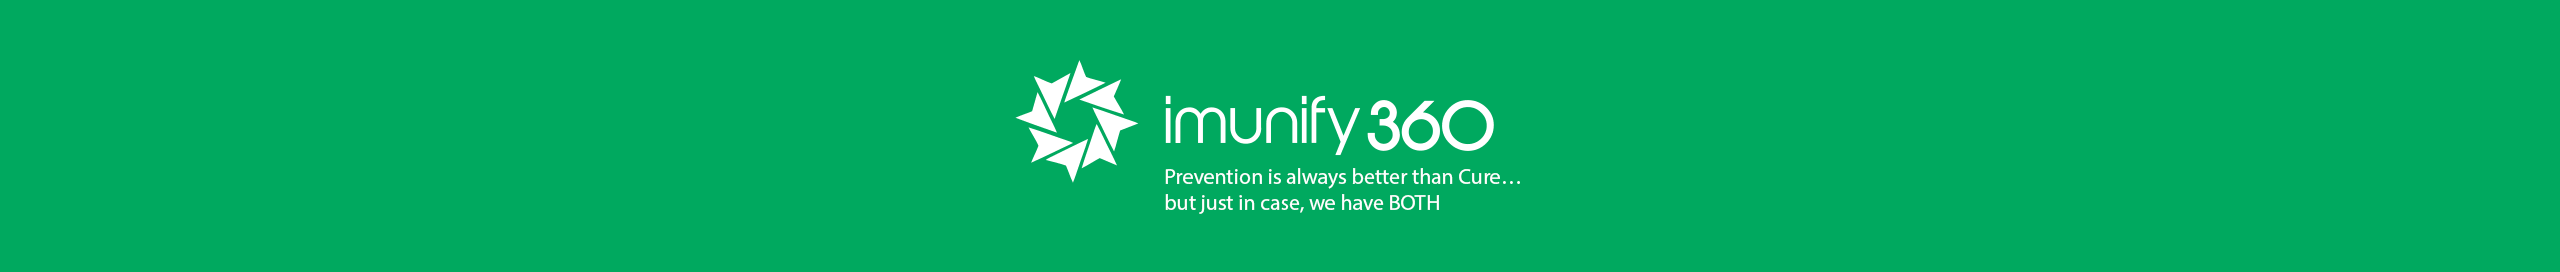 imunify360-prevencion-cura